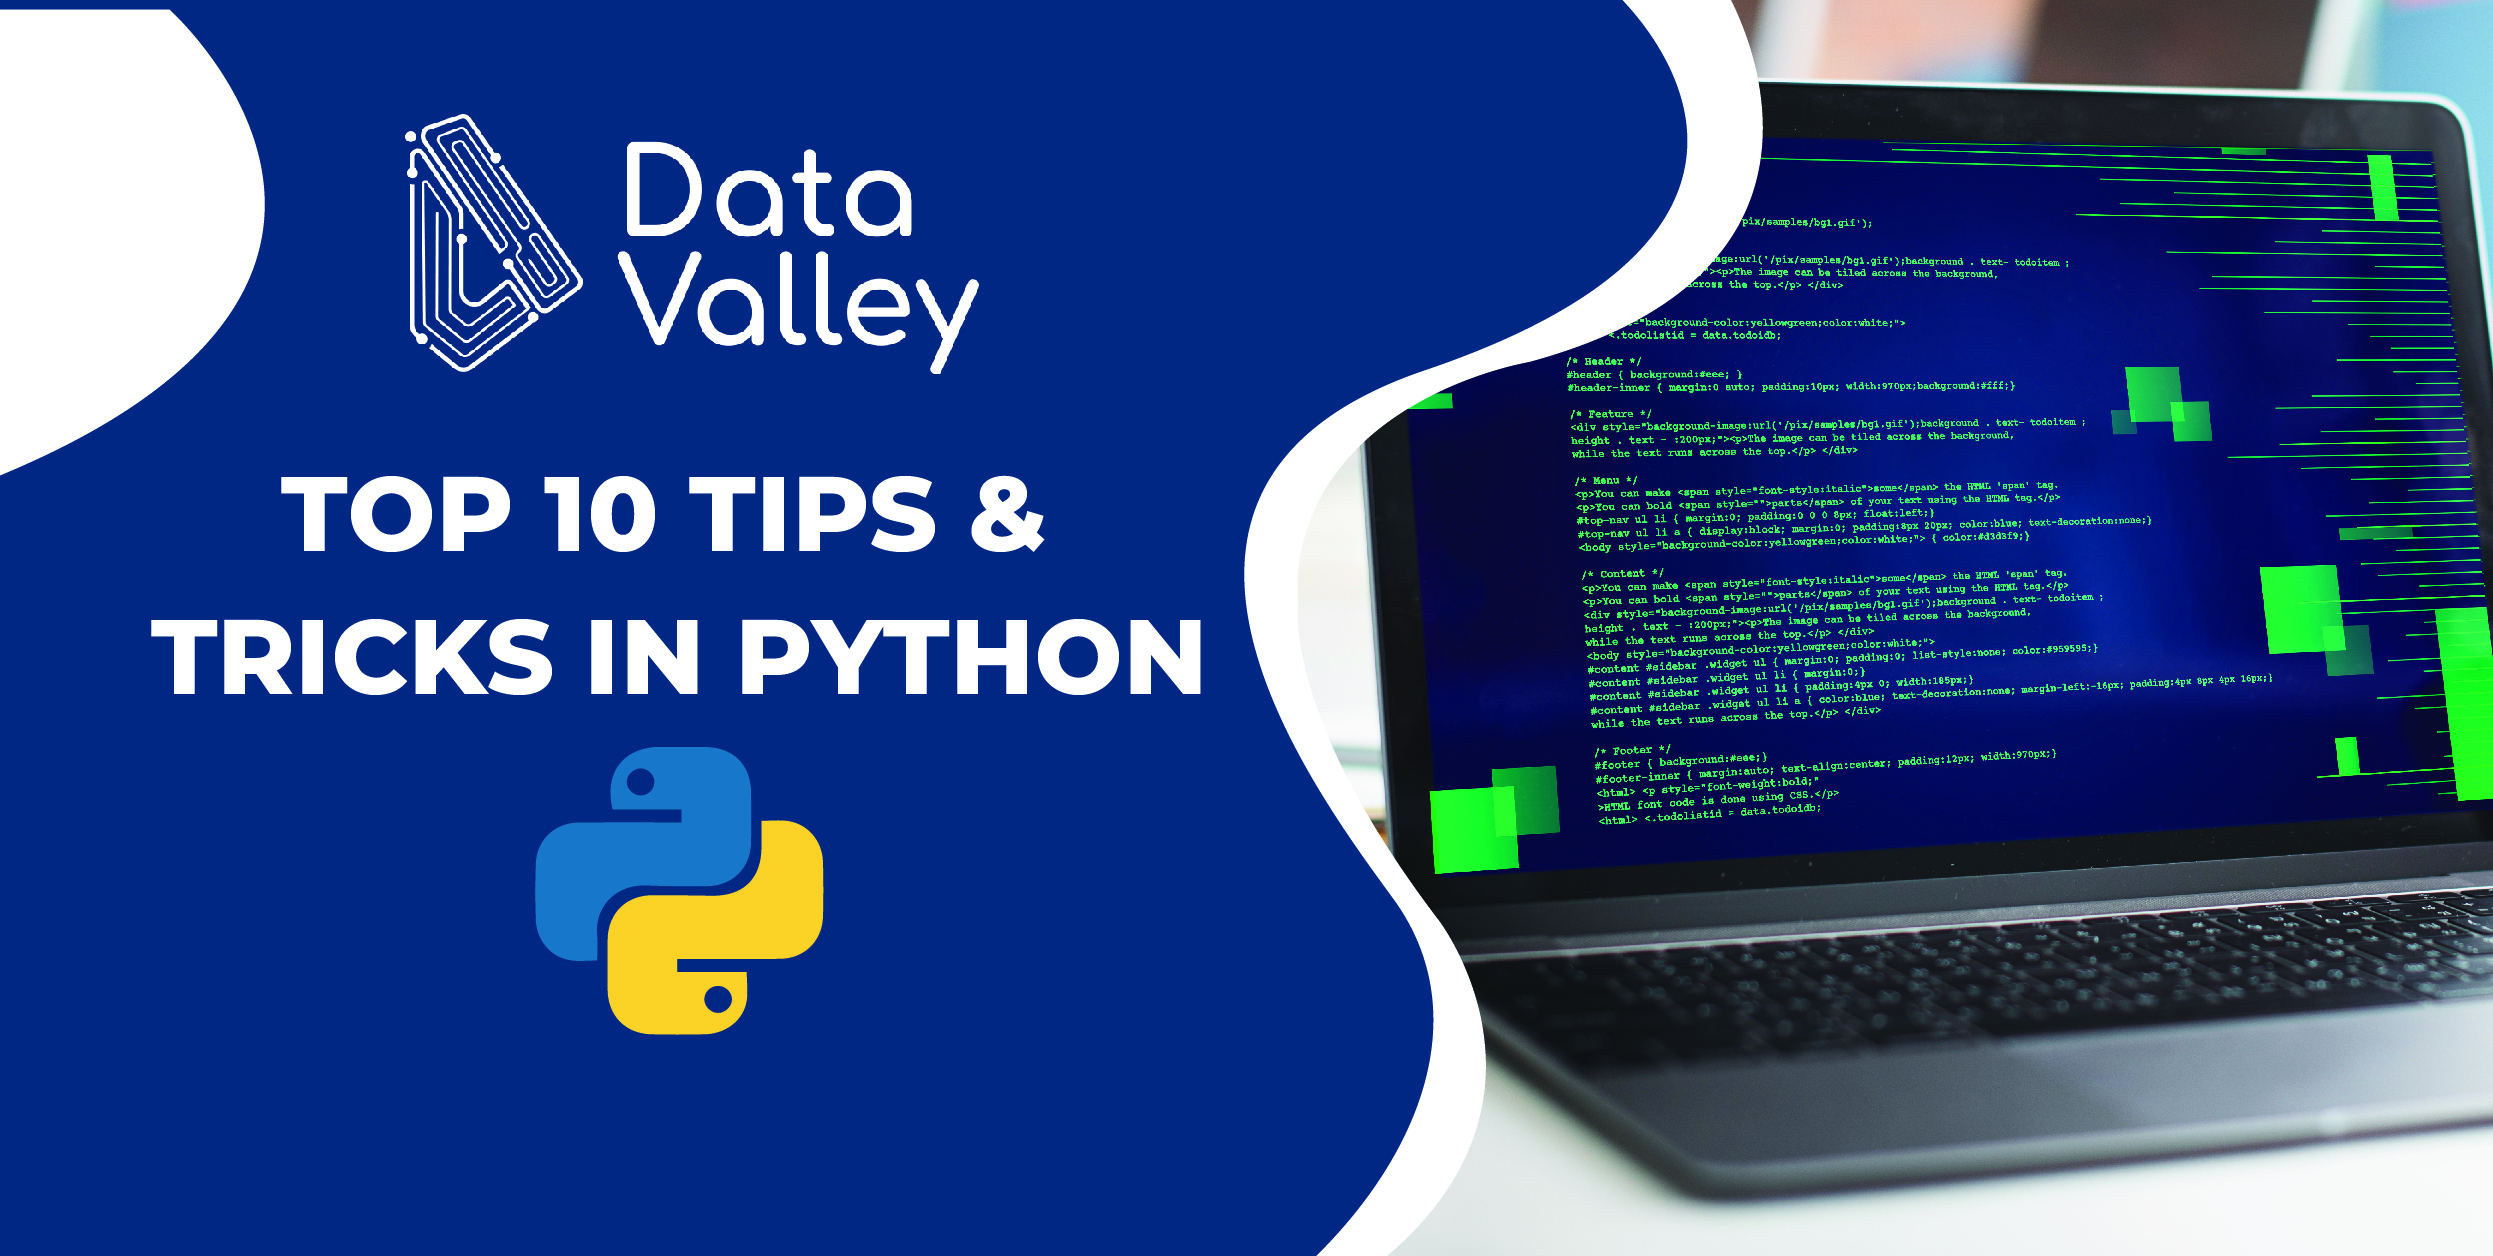 Những mẹo lập trình Python giúp bạn nâng cao kỹ năng lập trình của mình một cách hiệu quả. Hãy xem hình ảnh liên quan để học thêm nhiều mẹo hữu ích!